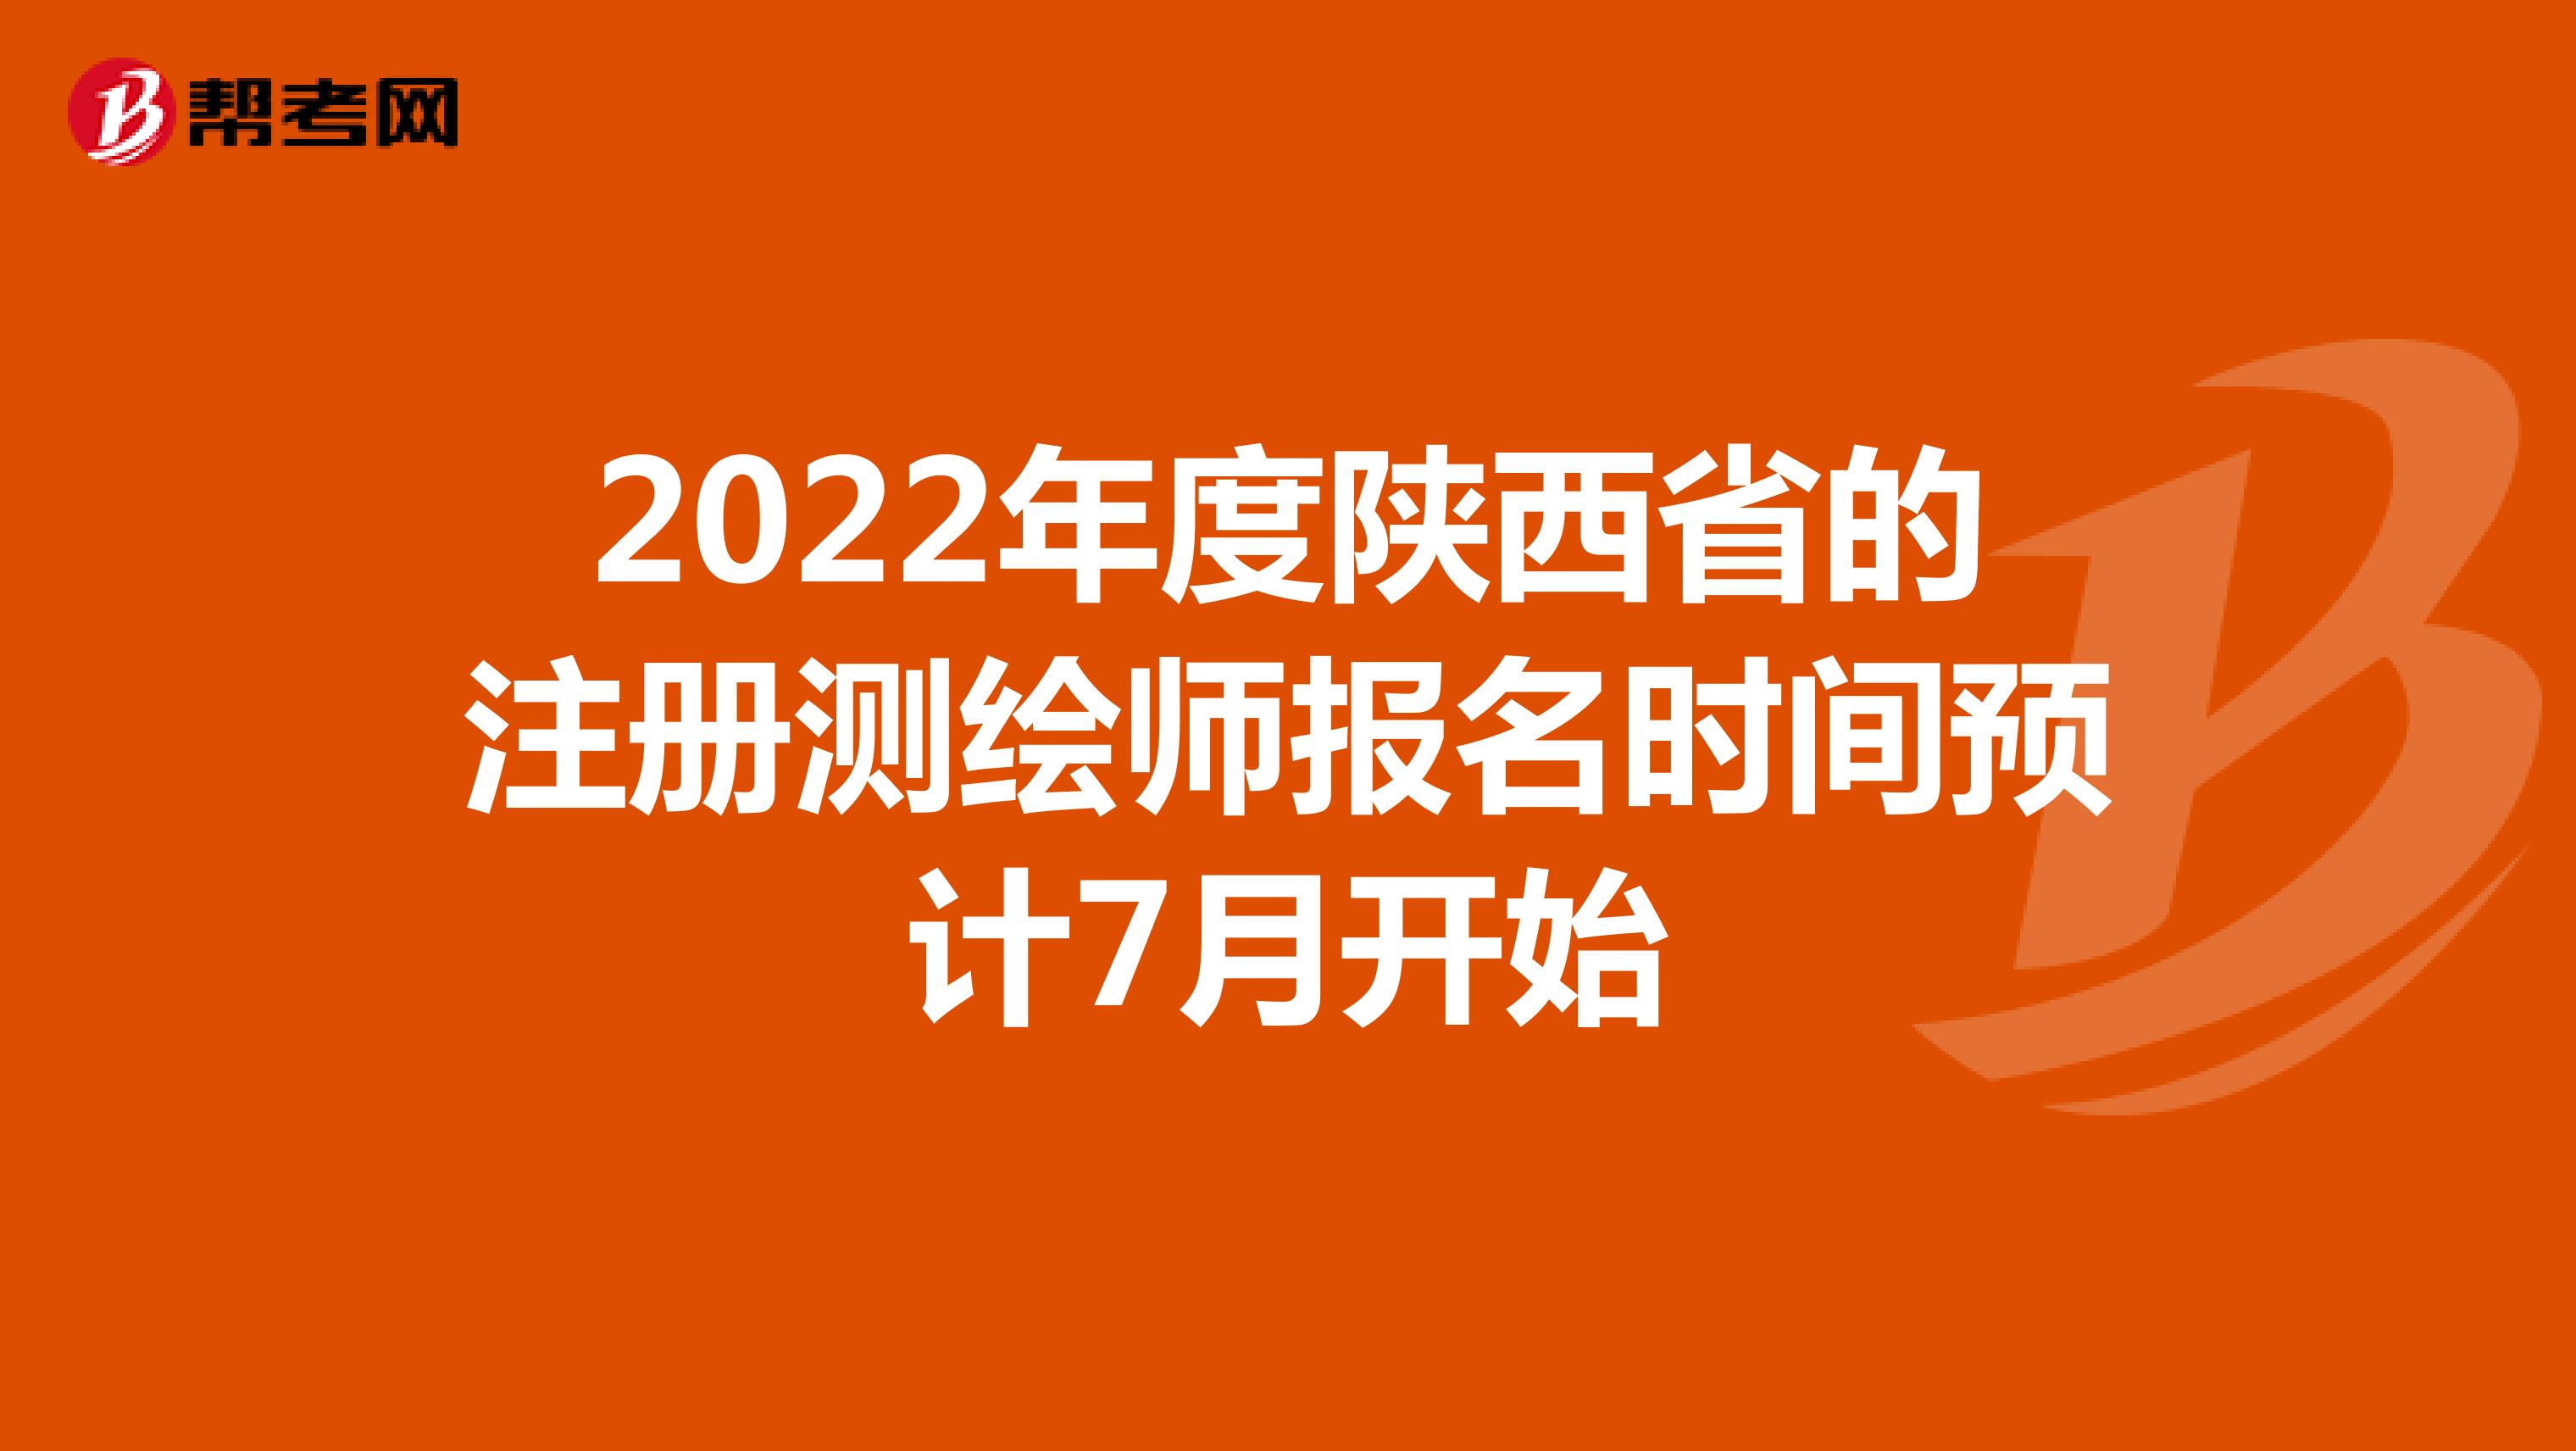 2022年度陕西省的注册测绘师报名时间预计7月开始